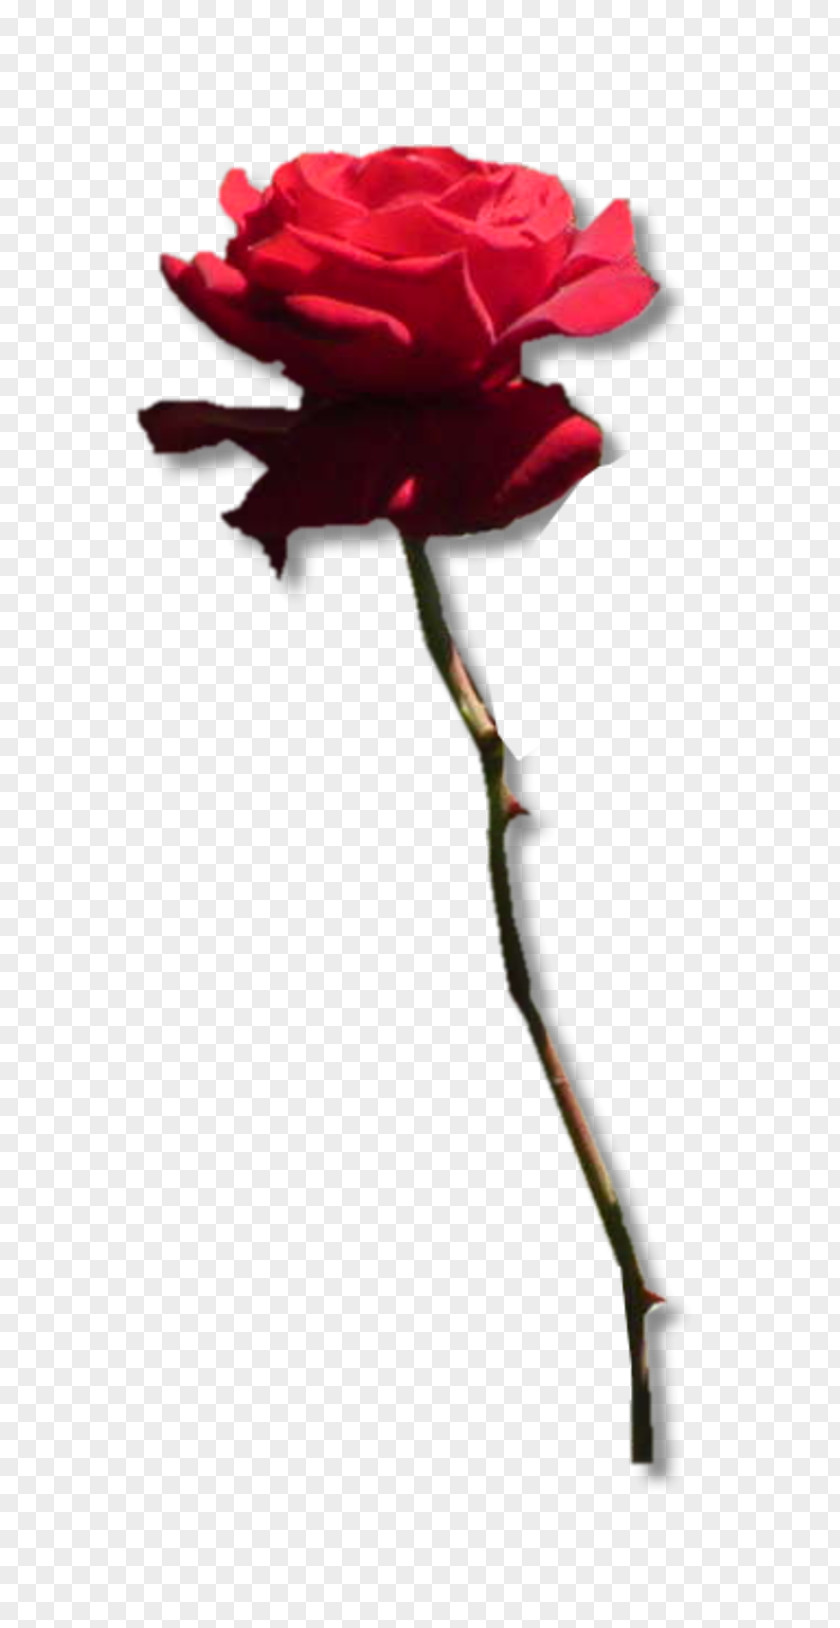 11 Garden Roses Centifolia Flower Symbol Rosa Gallica PNG